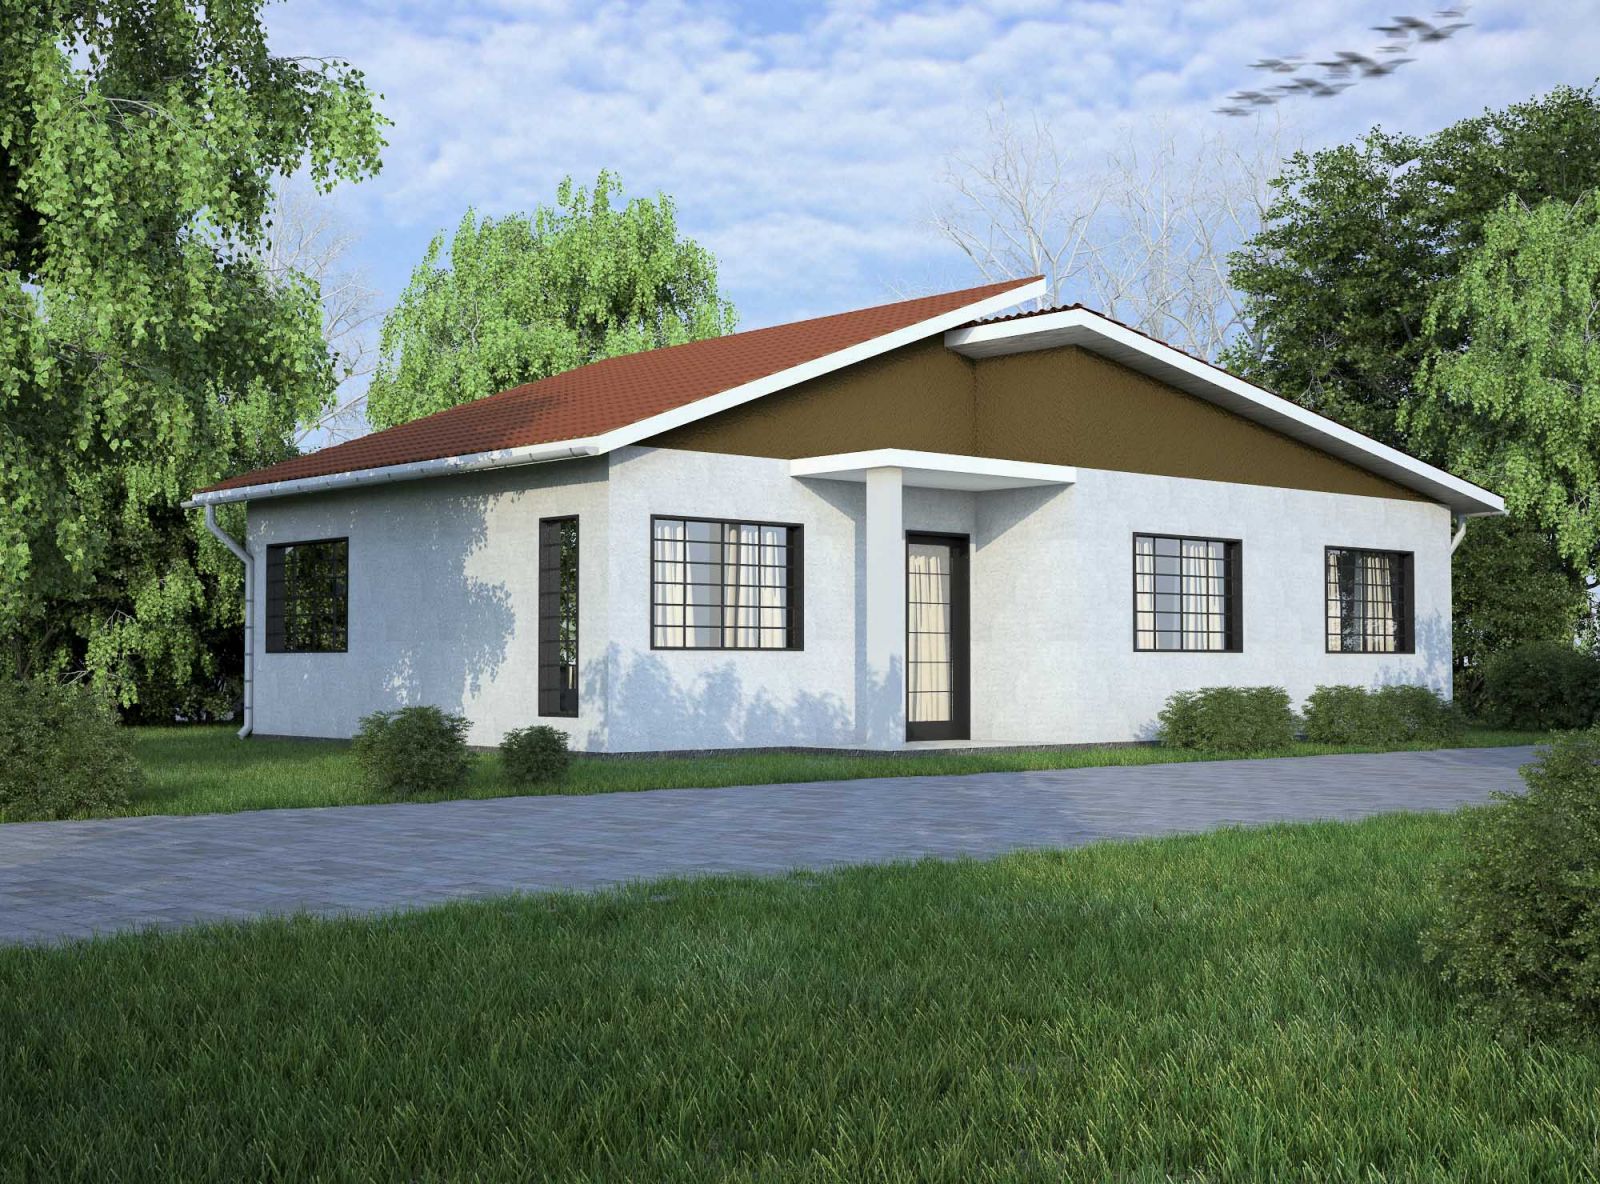 Good Roofing Low Cost Simple 3 Bedroom House Plans In Kenya Memorable